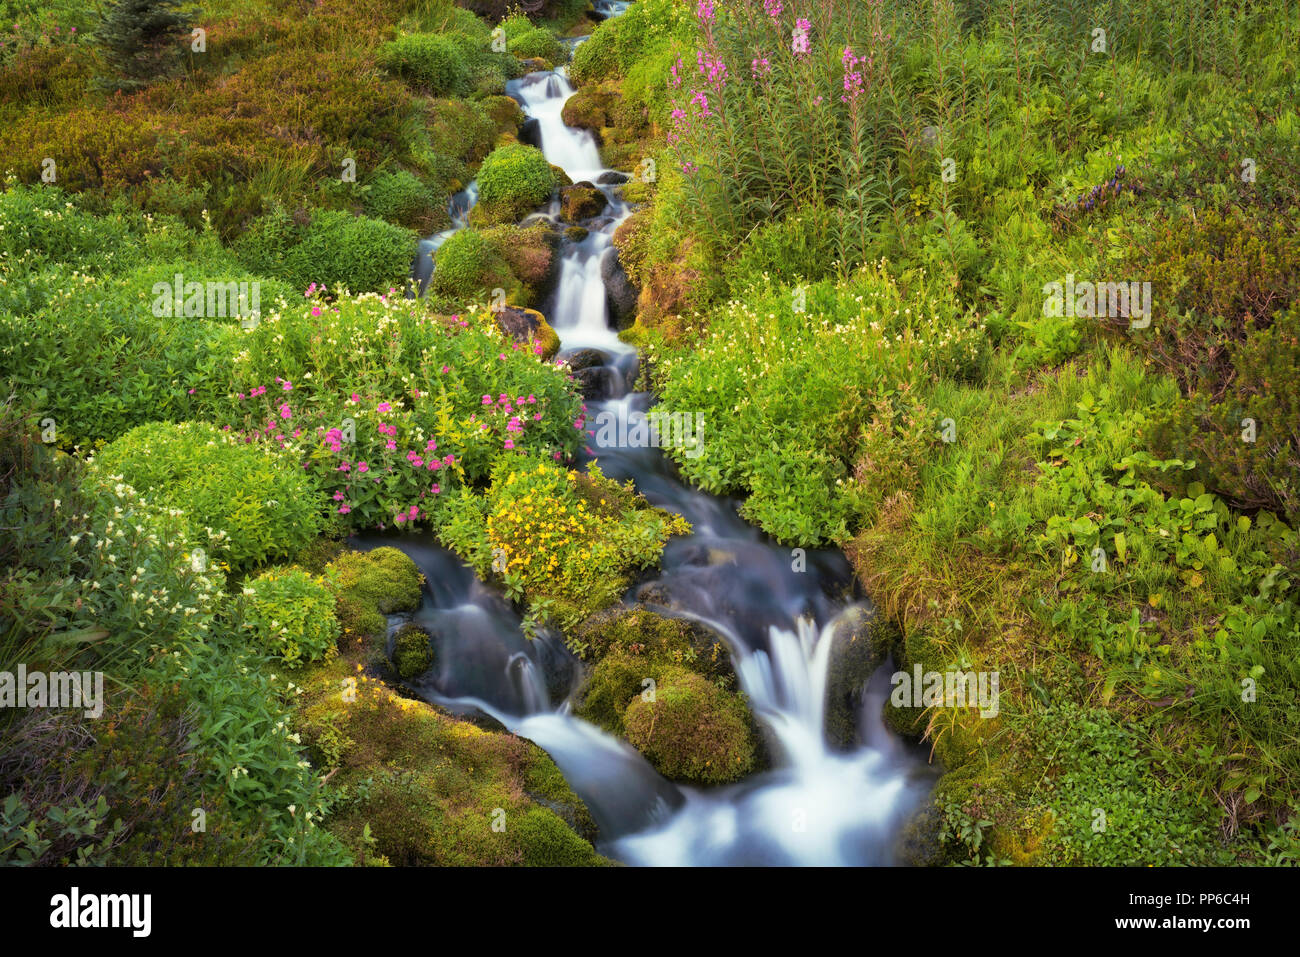 La fin de l'été fleurs des fleurs le long de ce petit ruisseau qui coule dans la rivière Paradise à Washington's Mt Rainier National Park. Banque D'Images